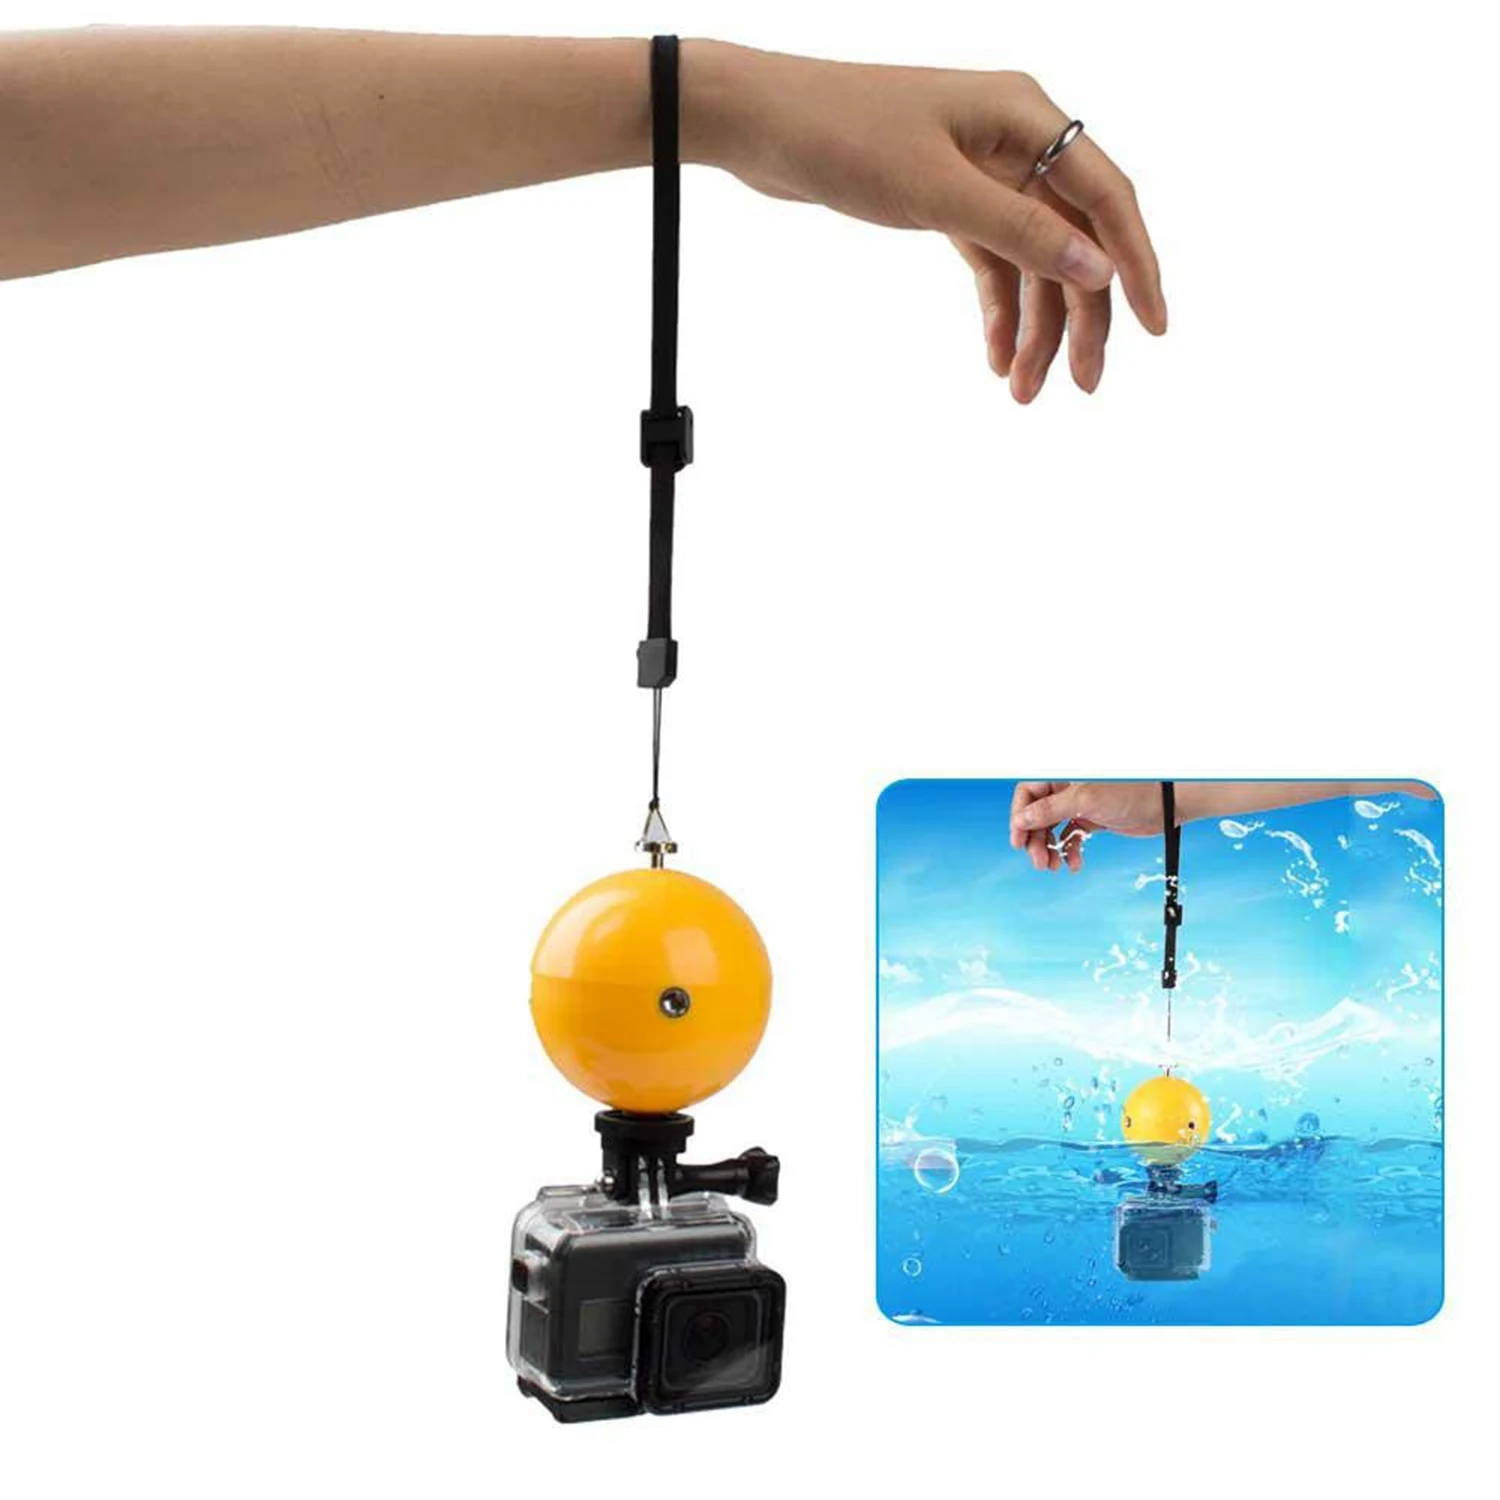 Плавающий шар устройство для фотографирования, поплавок Дайвинг плавающий мяч с ремешком на запястье поплавок плавучести плавающий с анти-потерянный веревочный адаптер